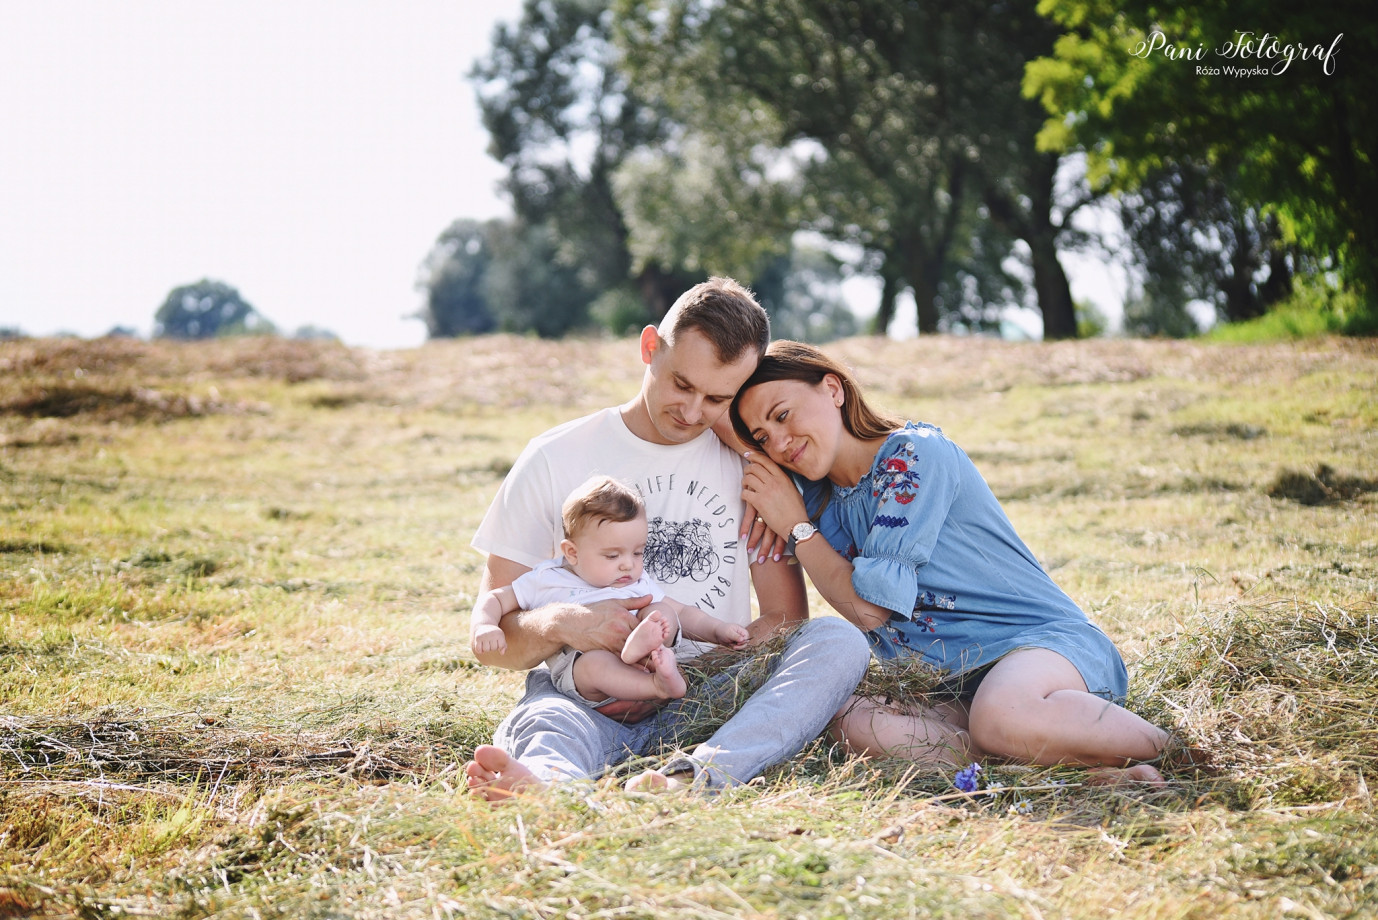 fotograf krakow pani-fotograf-roza-wypyska portfolio zdjecia rodzinne fotografia rodzinna sesja